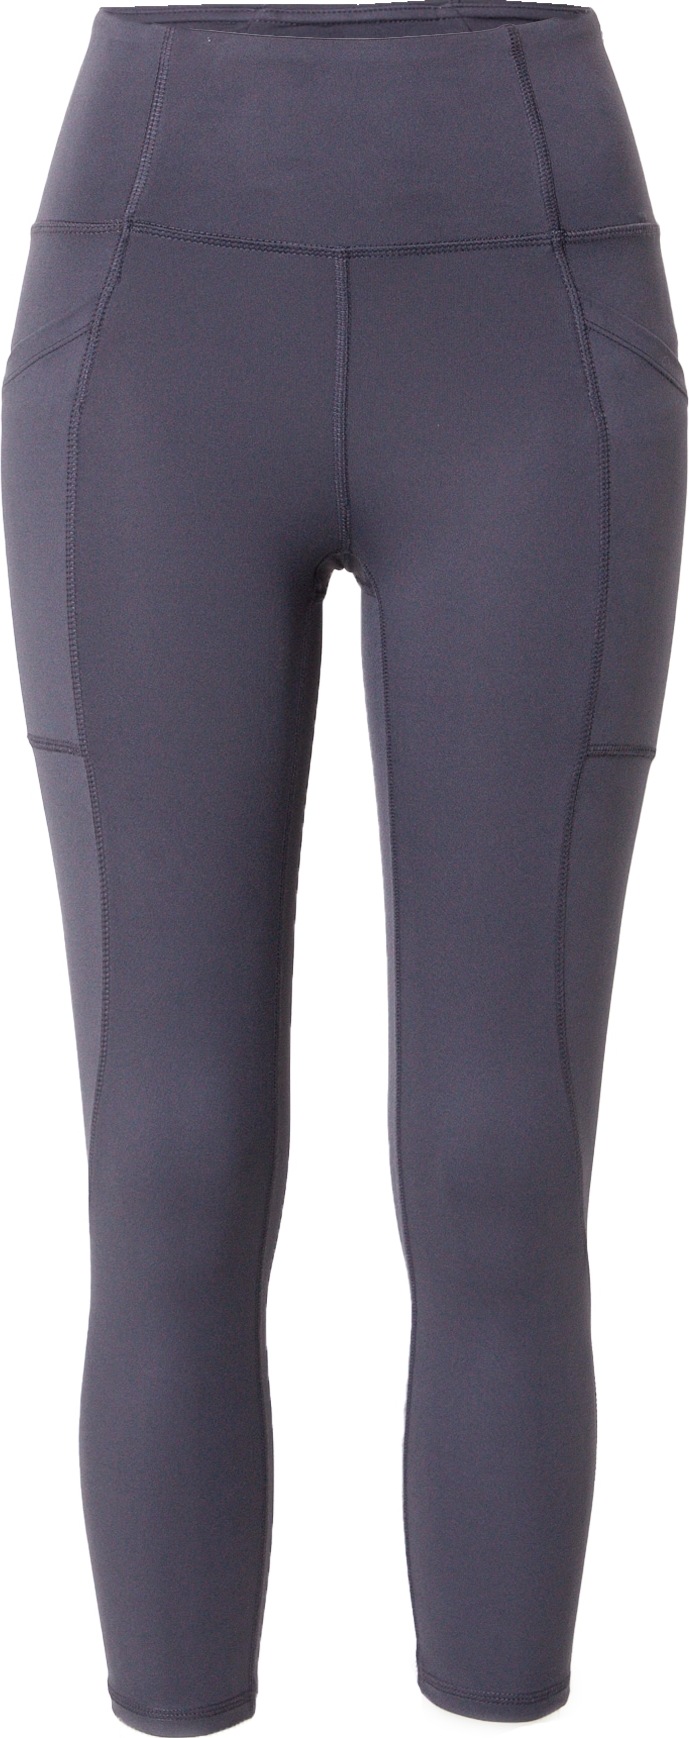 Sportovní kalhoty 'ABIGAIL' Marika marine modrá / šedá